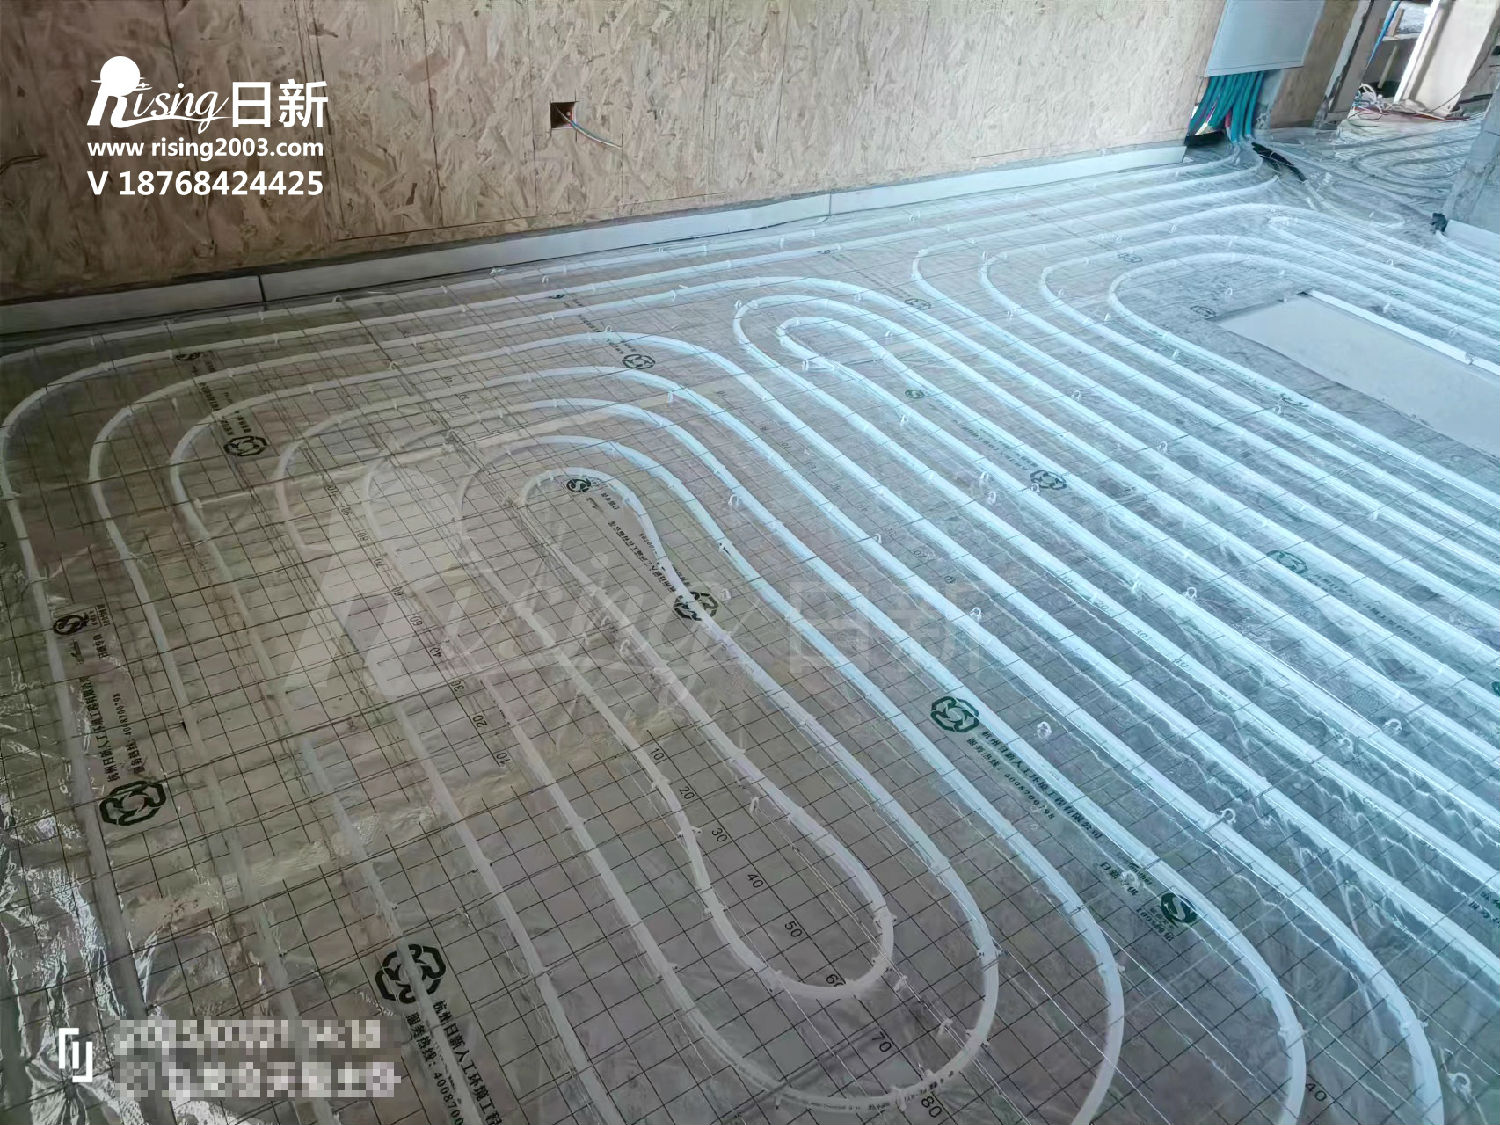 九龙仓天玺风冷热泵系统项目地暖阶段【日新环境】